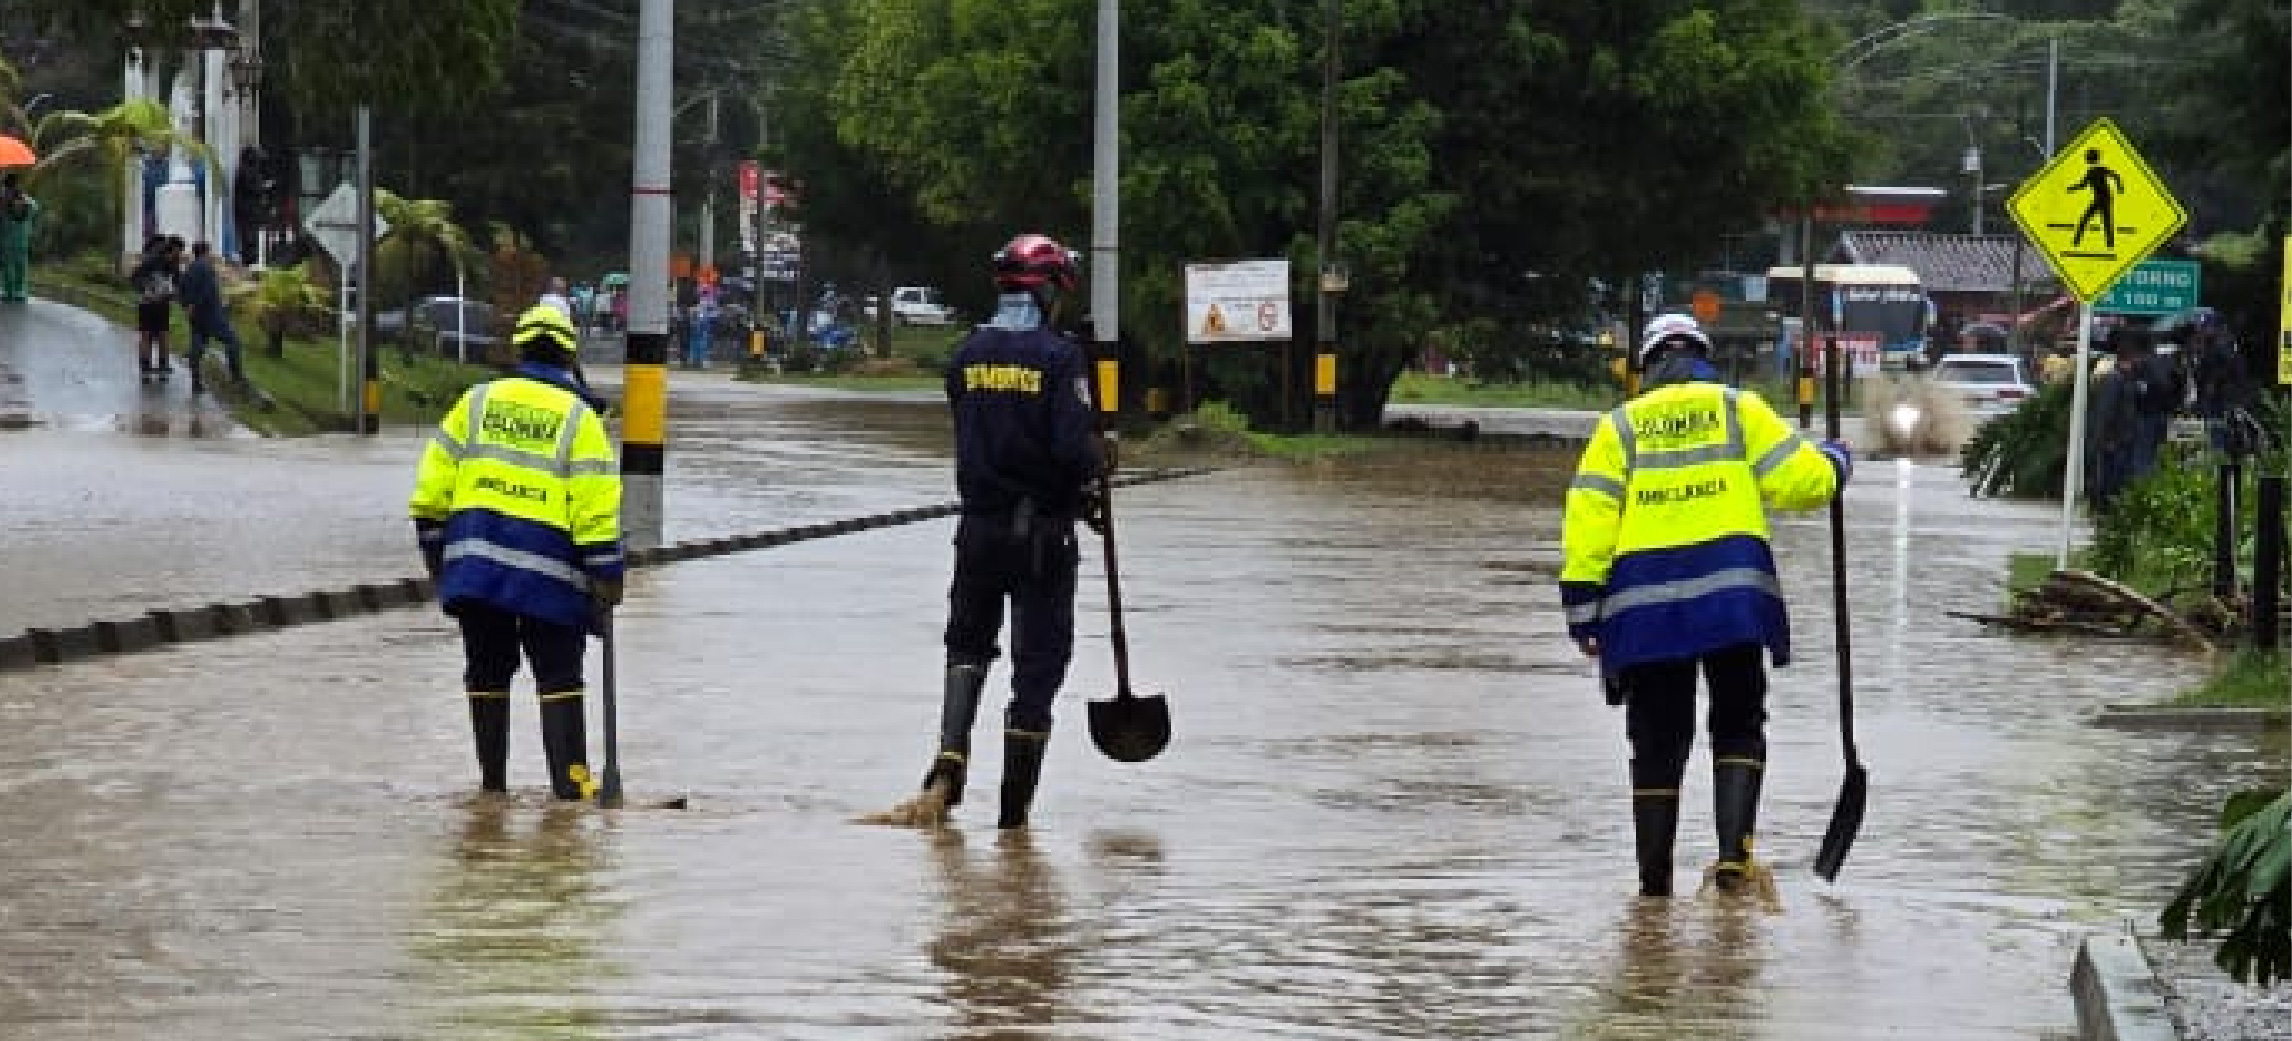 “Mantener la calma y seguir indicaciones”: el llamado de la Alcaldía de El Retiro tras inundaciones